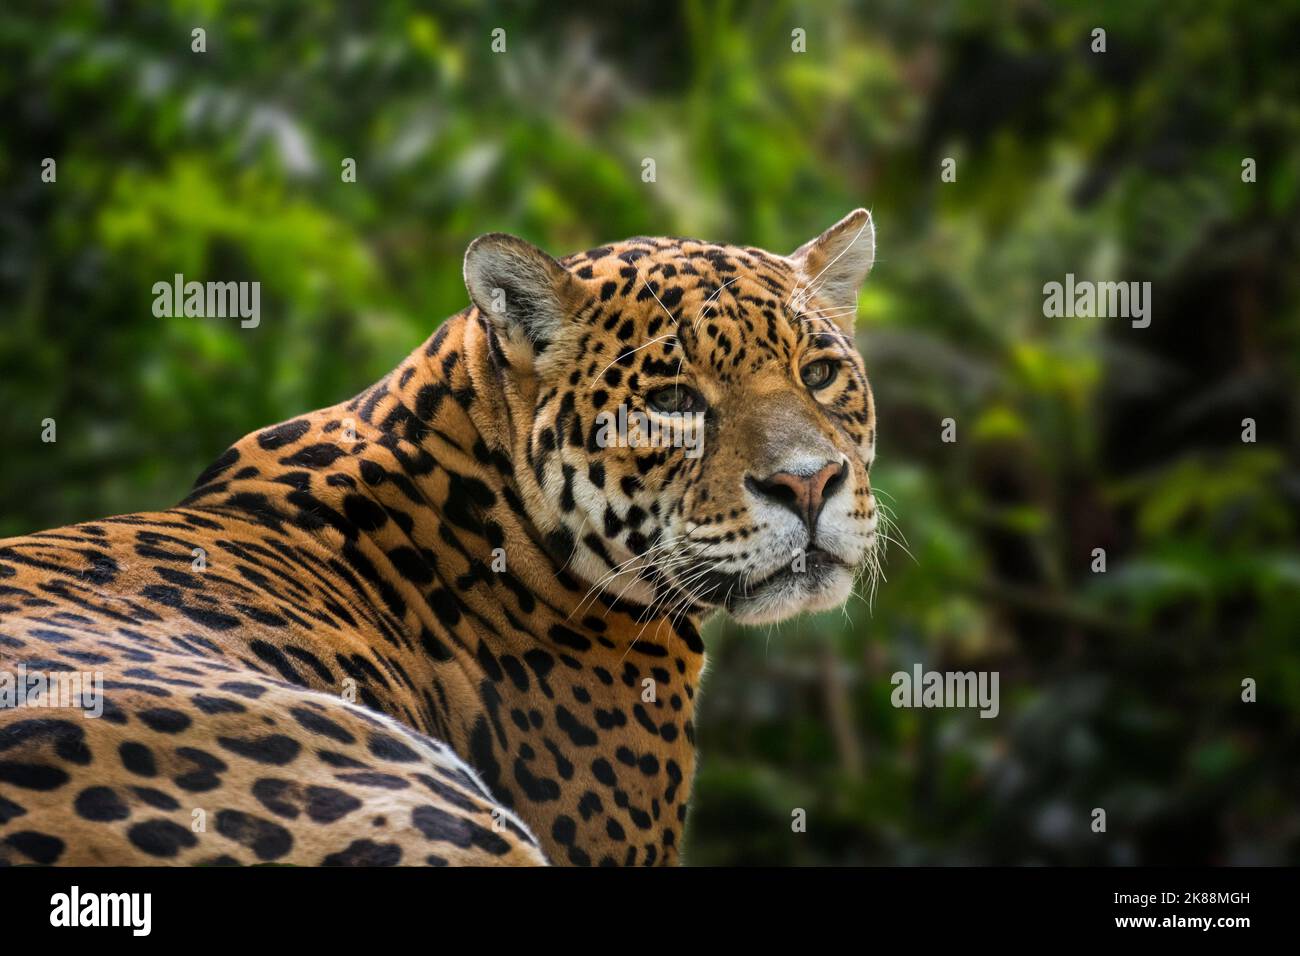 Jaguar (Panthera onca) Nahaufnahme Porträt in tropischem Regenwald / Regenwald, beheimatet in Mittel- und Südamerika Stockfoto